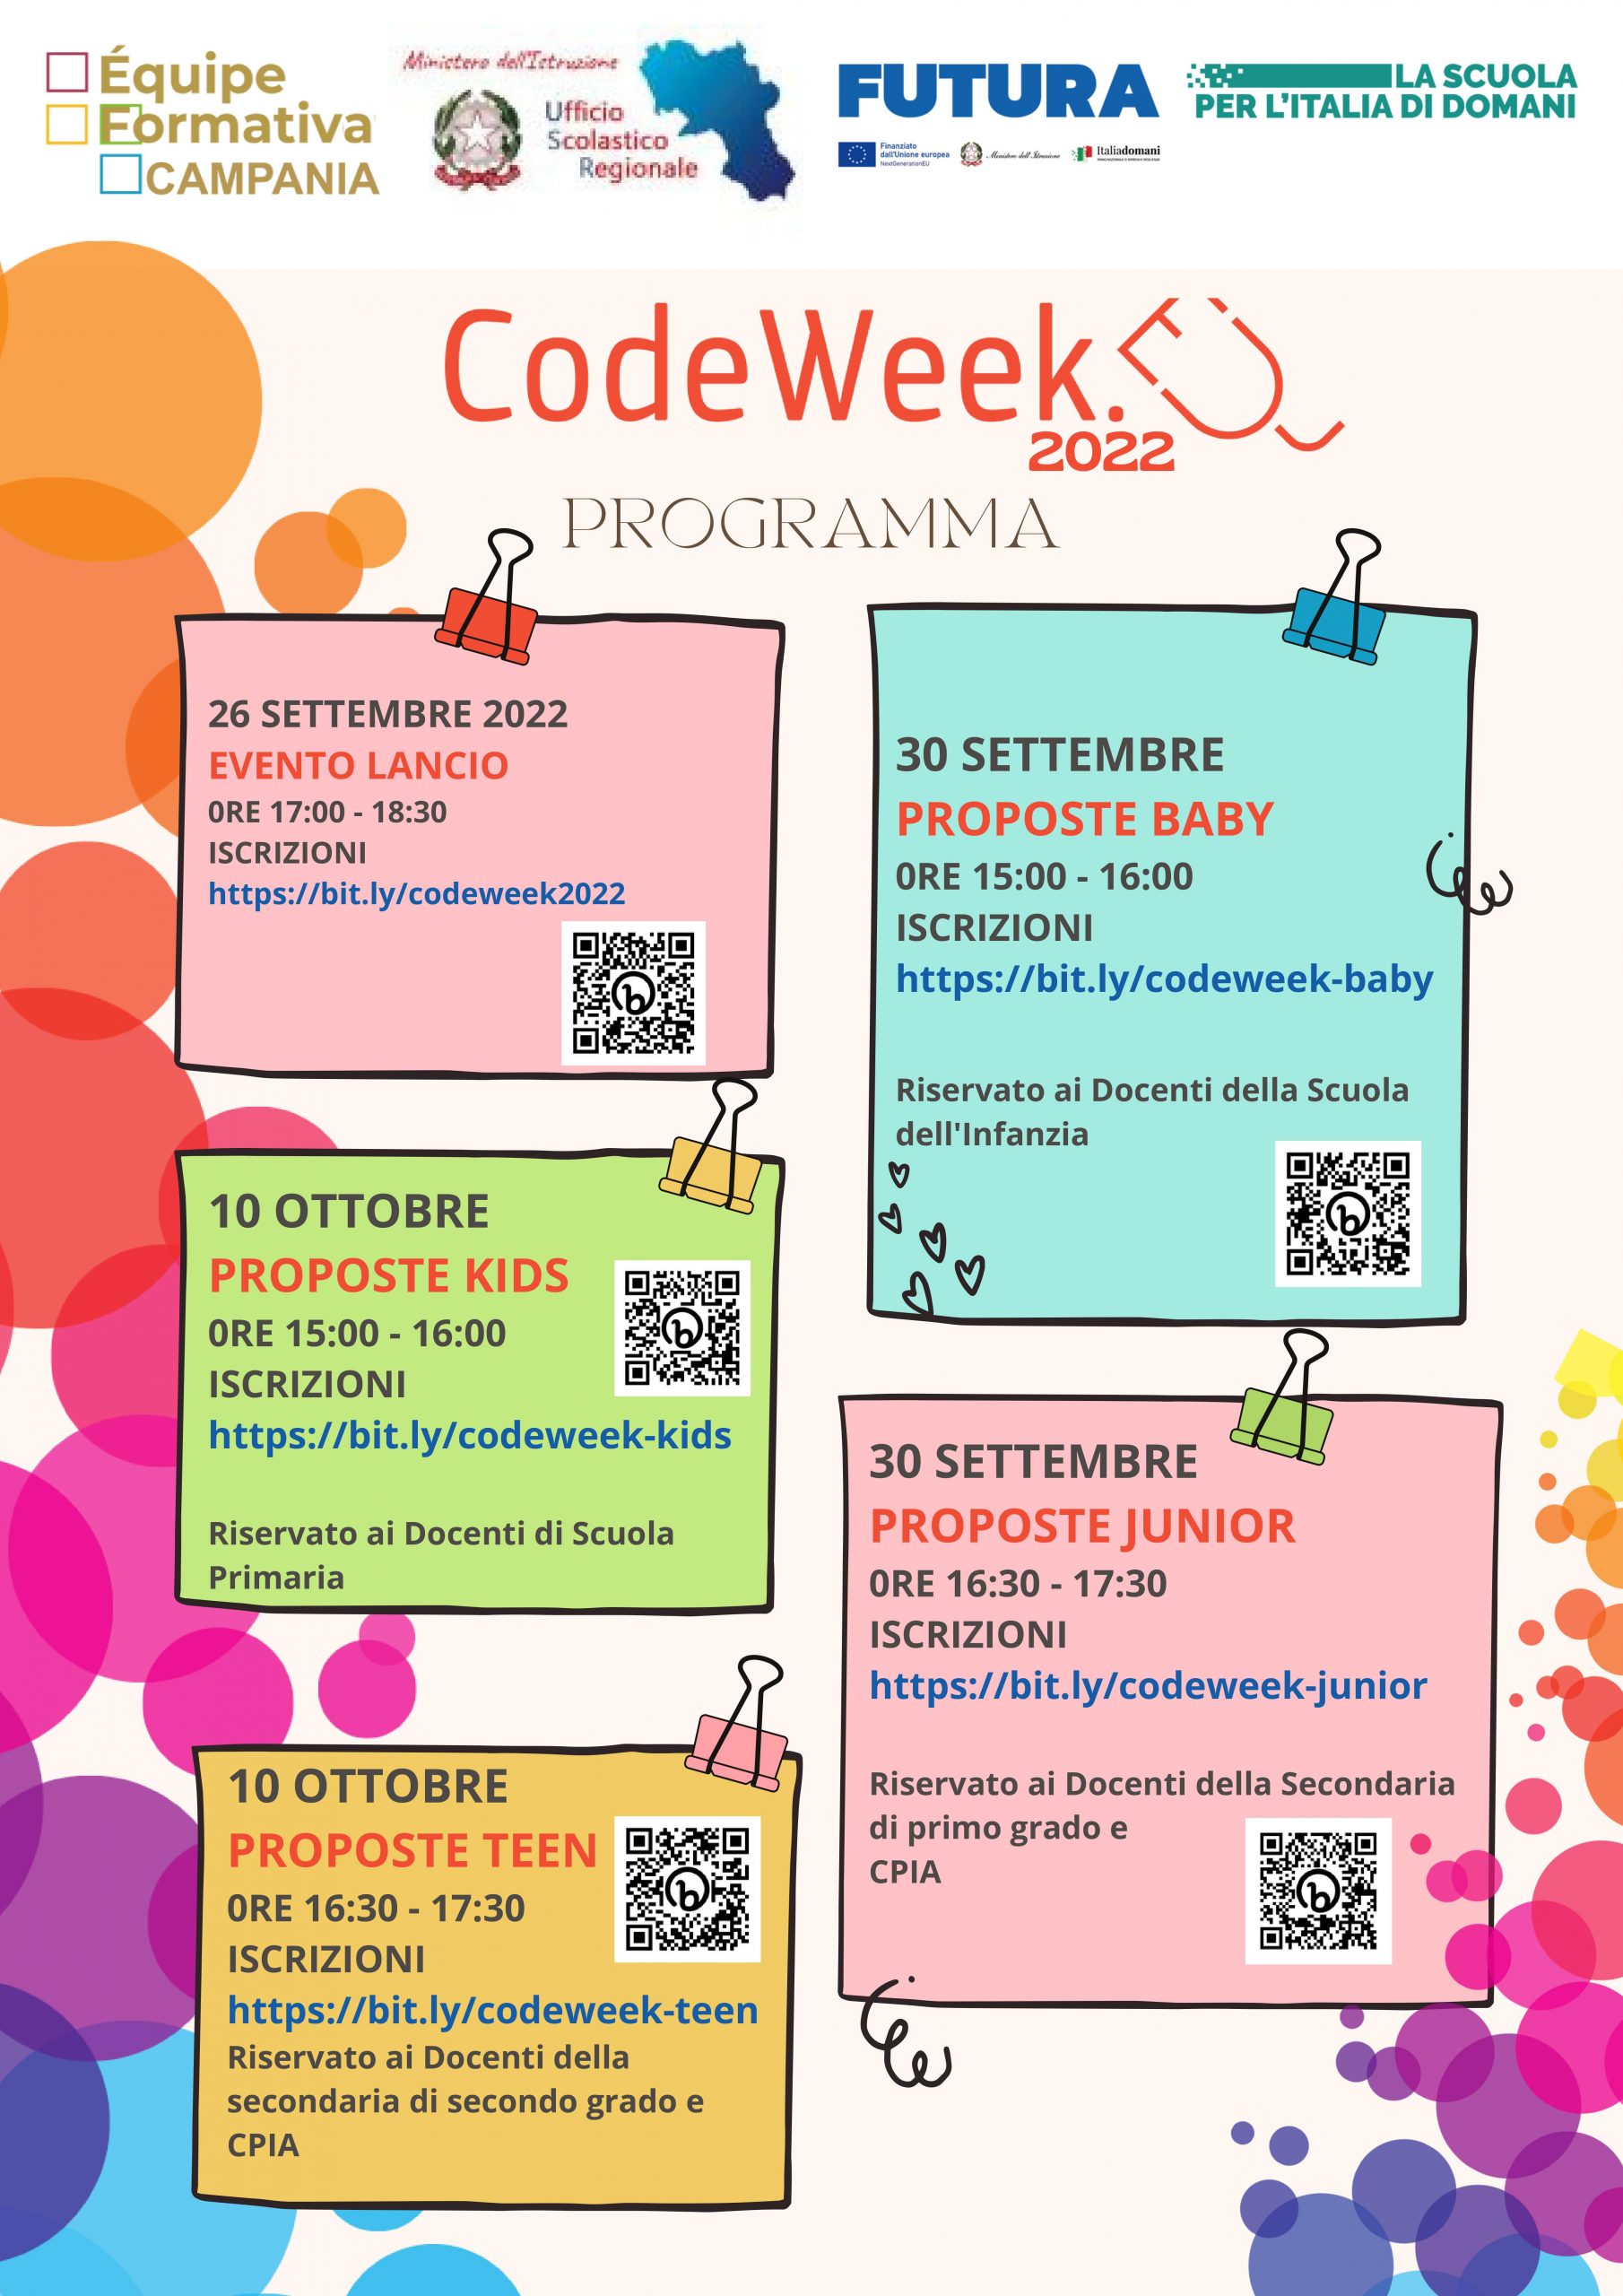 Codeweek - formazione docenti per tutti gli ordini di scuola